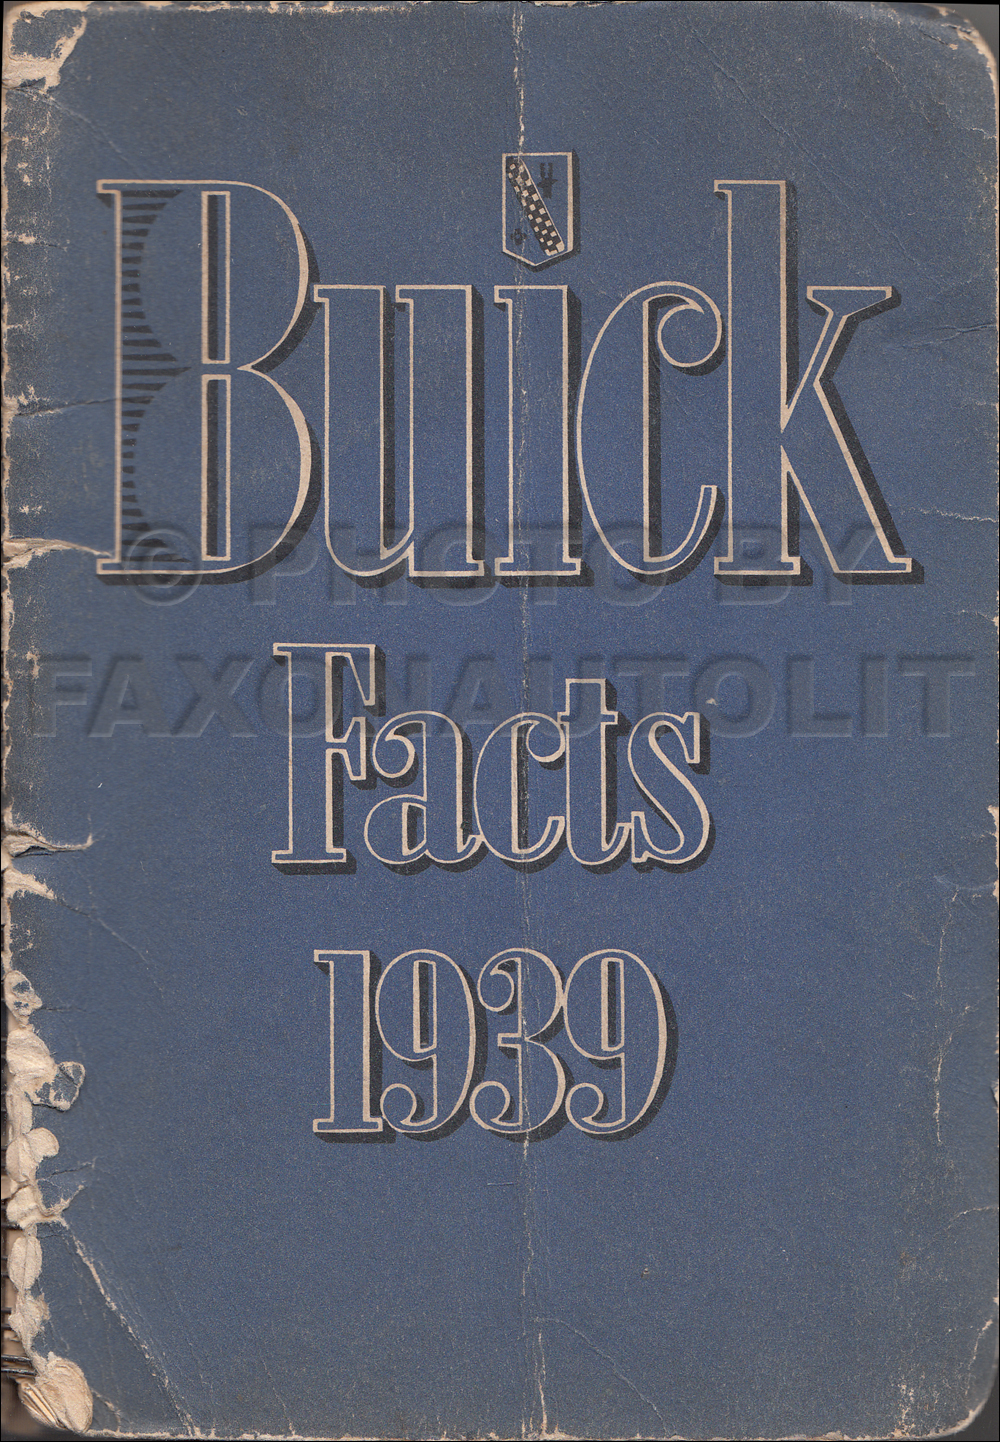 1939 Buick Data Facts Book Original